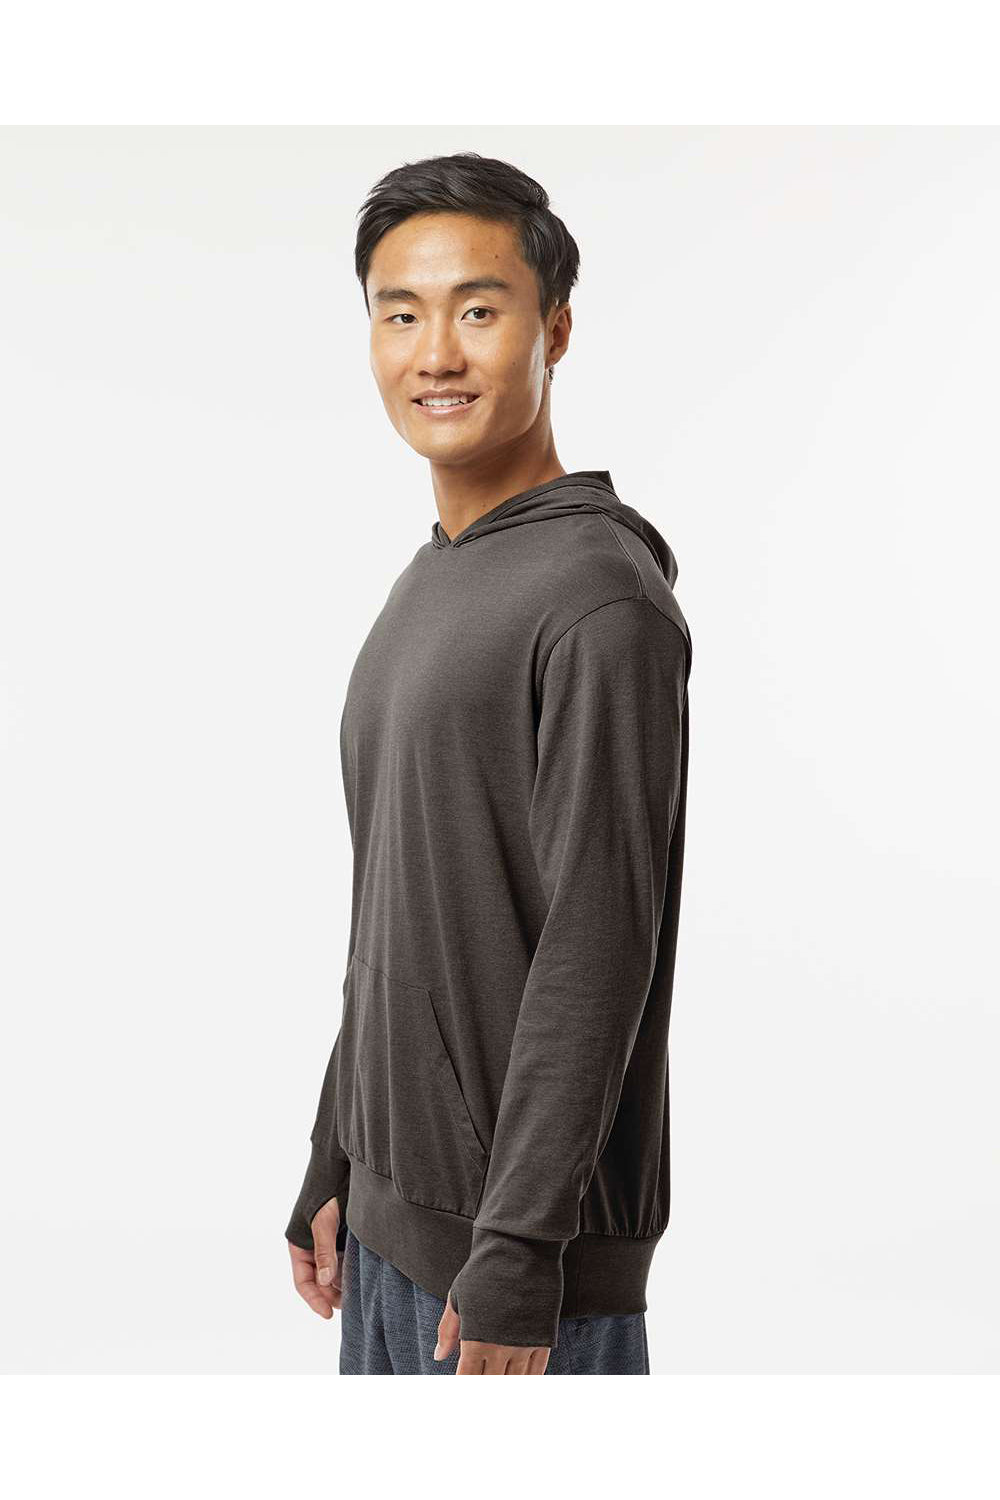 Kastlfel 4022 Mens RecycledSoft Hooded Long Sleeve T-Shirt Hoodie Carbon Grey Model Side